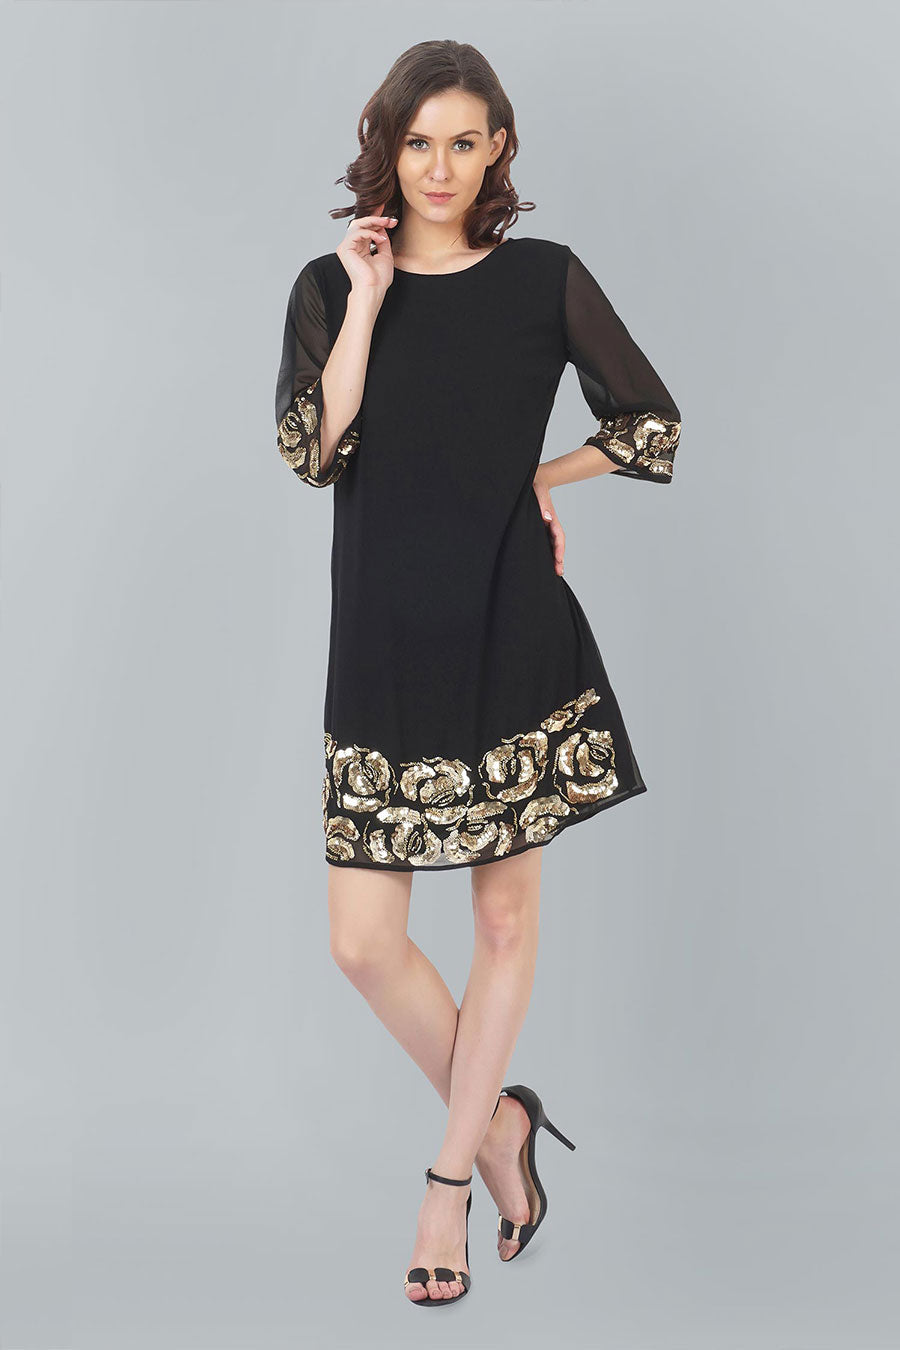 Rose Motif Black Tunic Dress